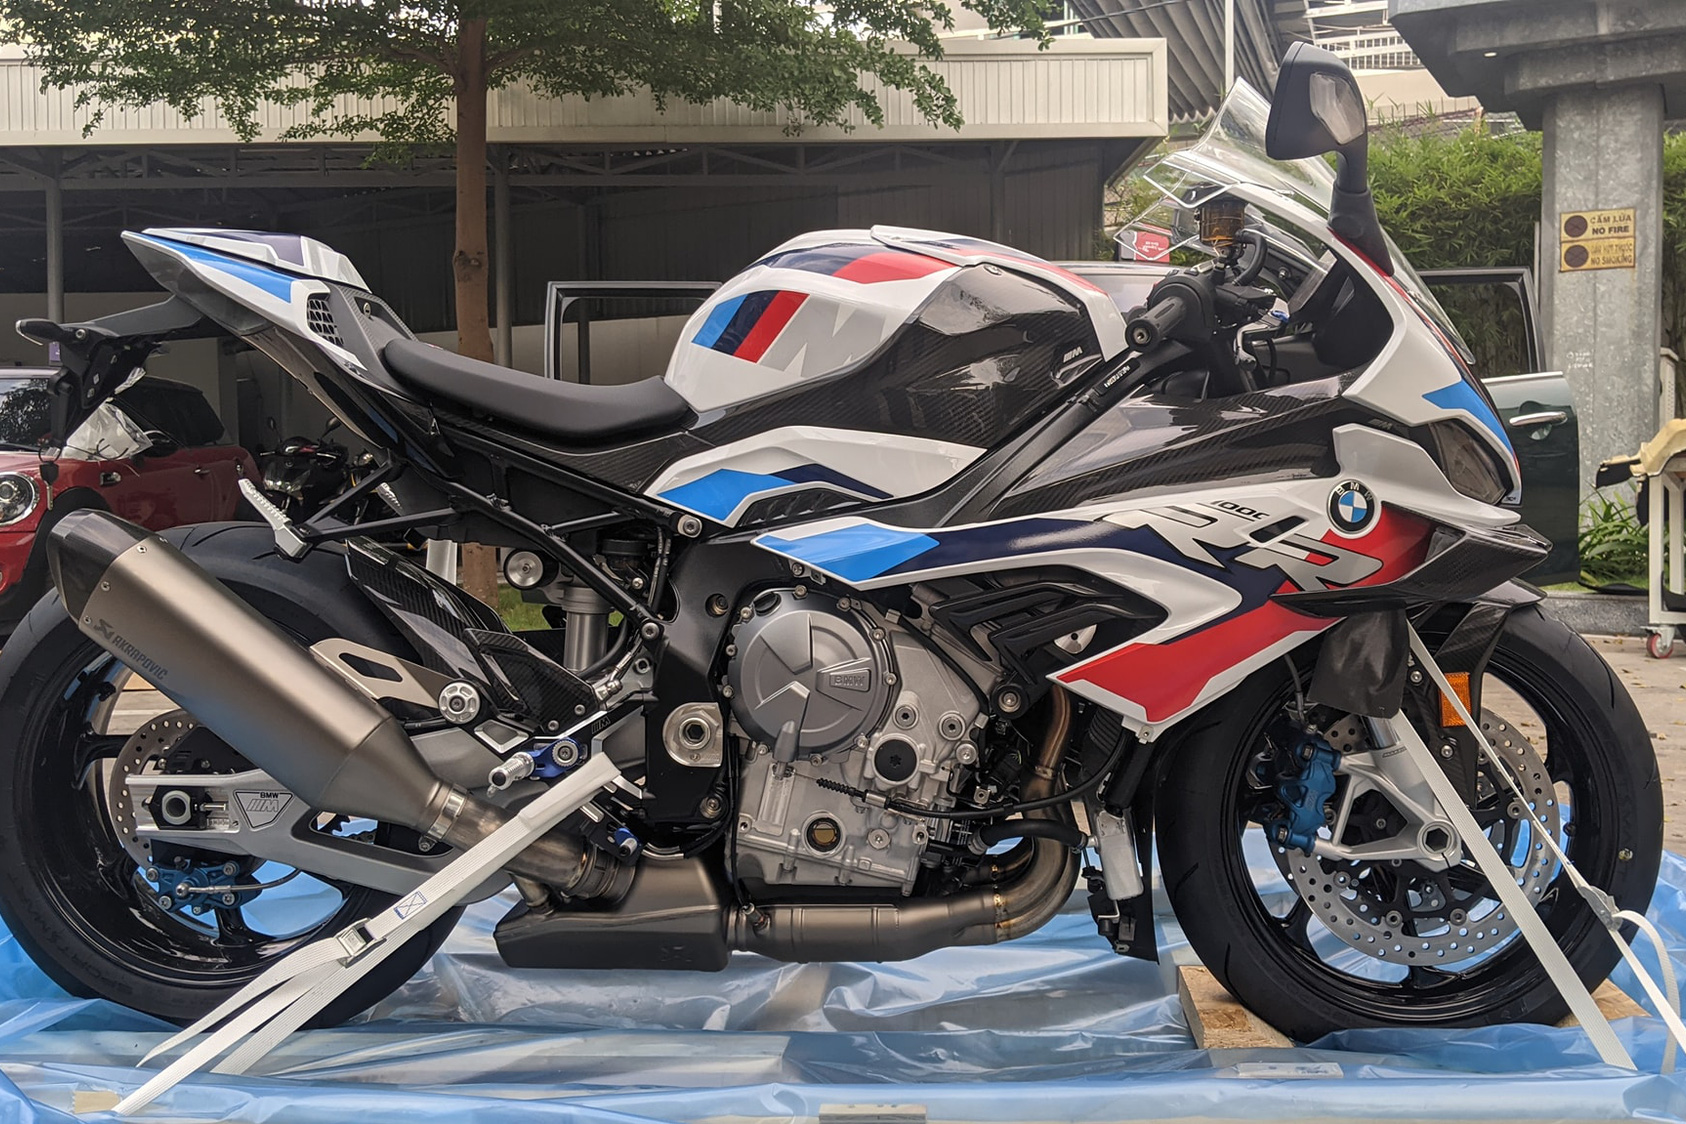 Siêu mô tô BMW M 1000 RR giá 1,6 tỷ đồng về Việt Nam: Cánh gió carbon hầm hố, lô đầu 6 chiếc đã có chủ